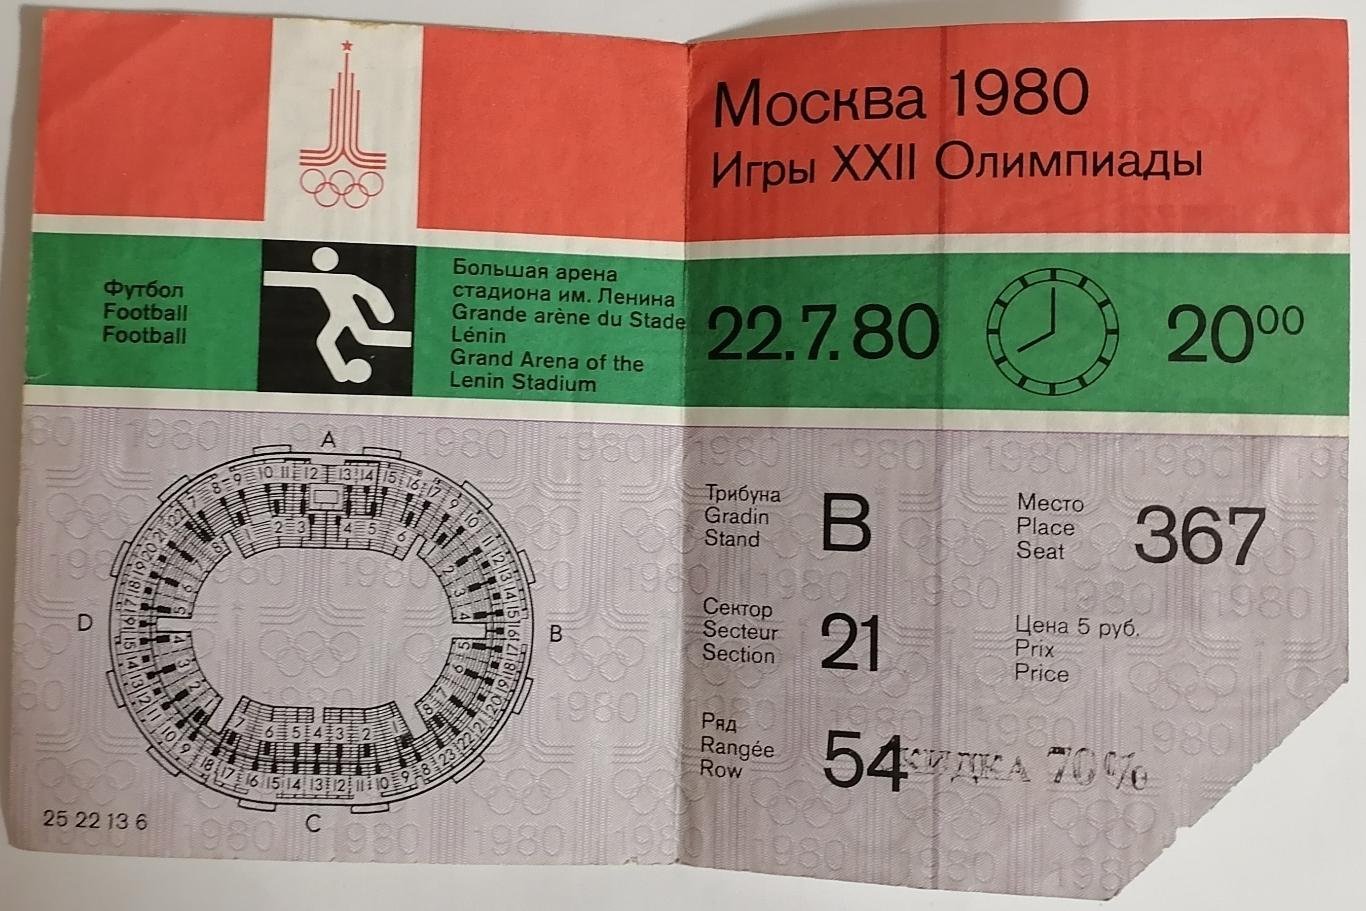 СБОРНАЯ СССР Россия - ЗАМБИЯ 1980 билет ОЛИМПИАДА